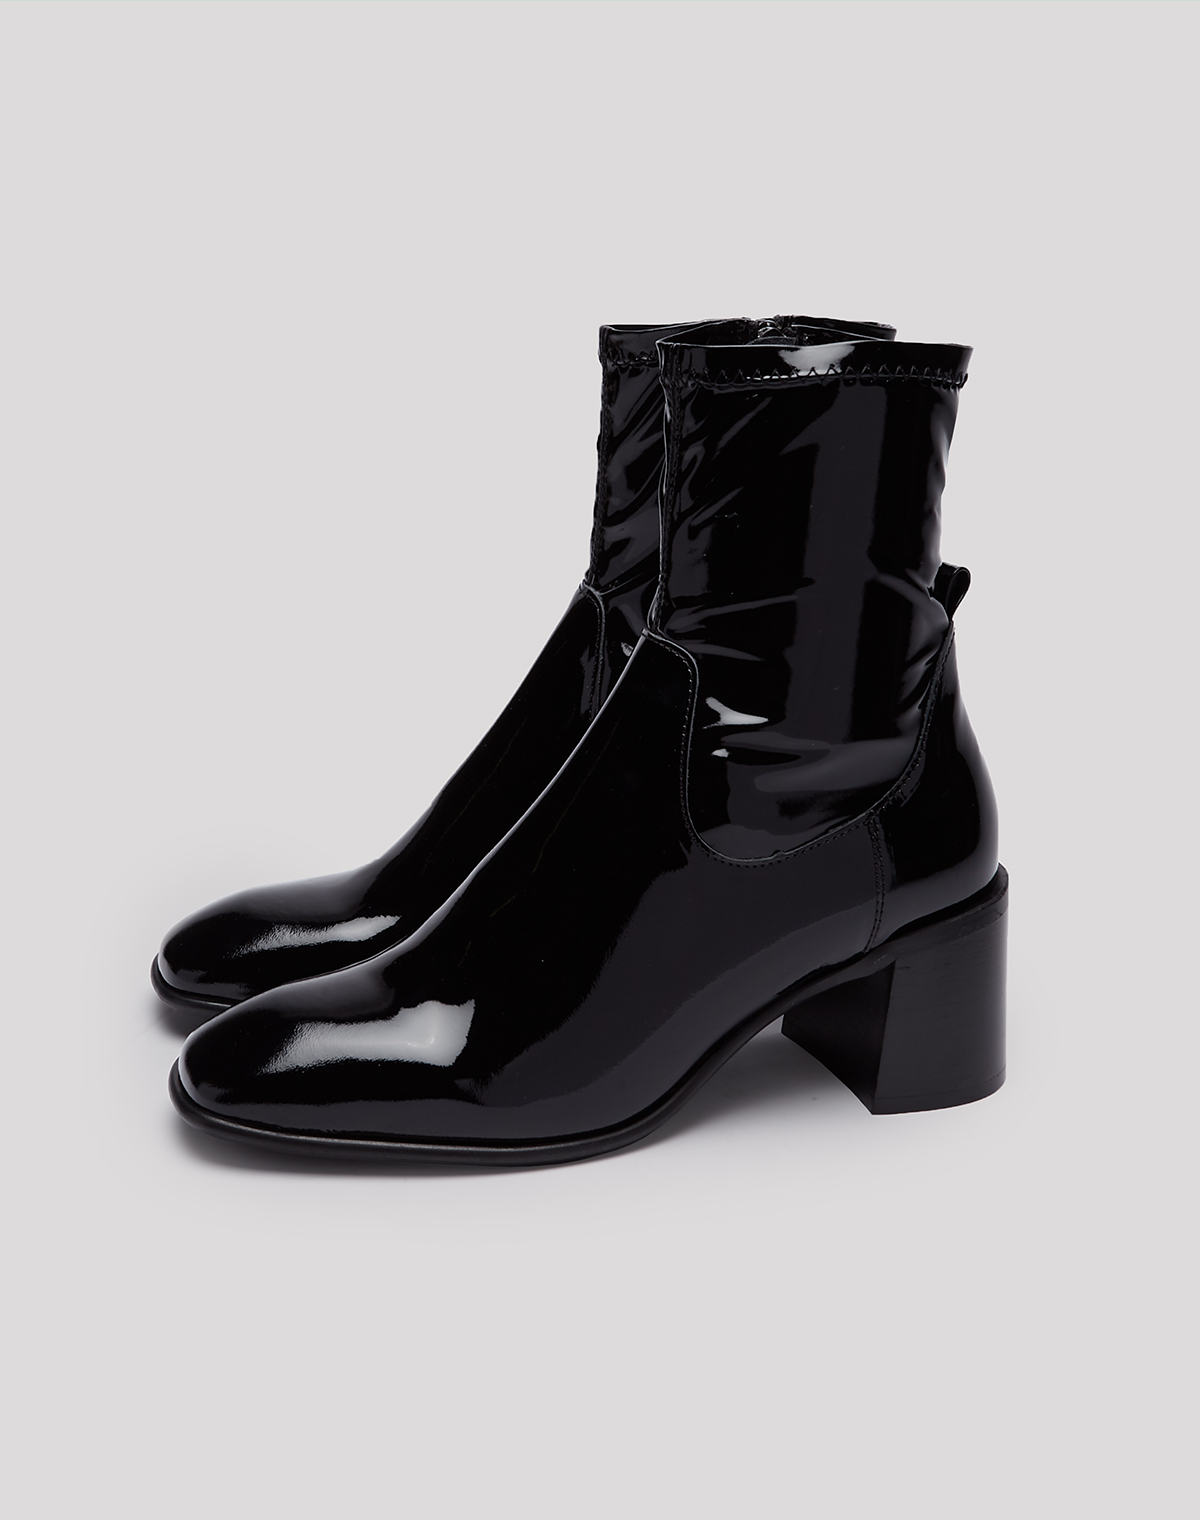 Azra Black Patent Leather Boots // E8 